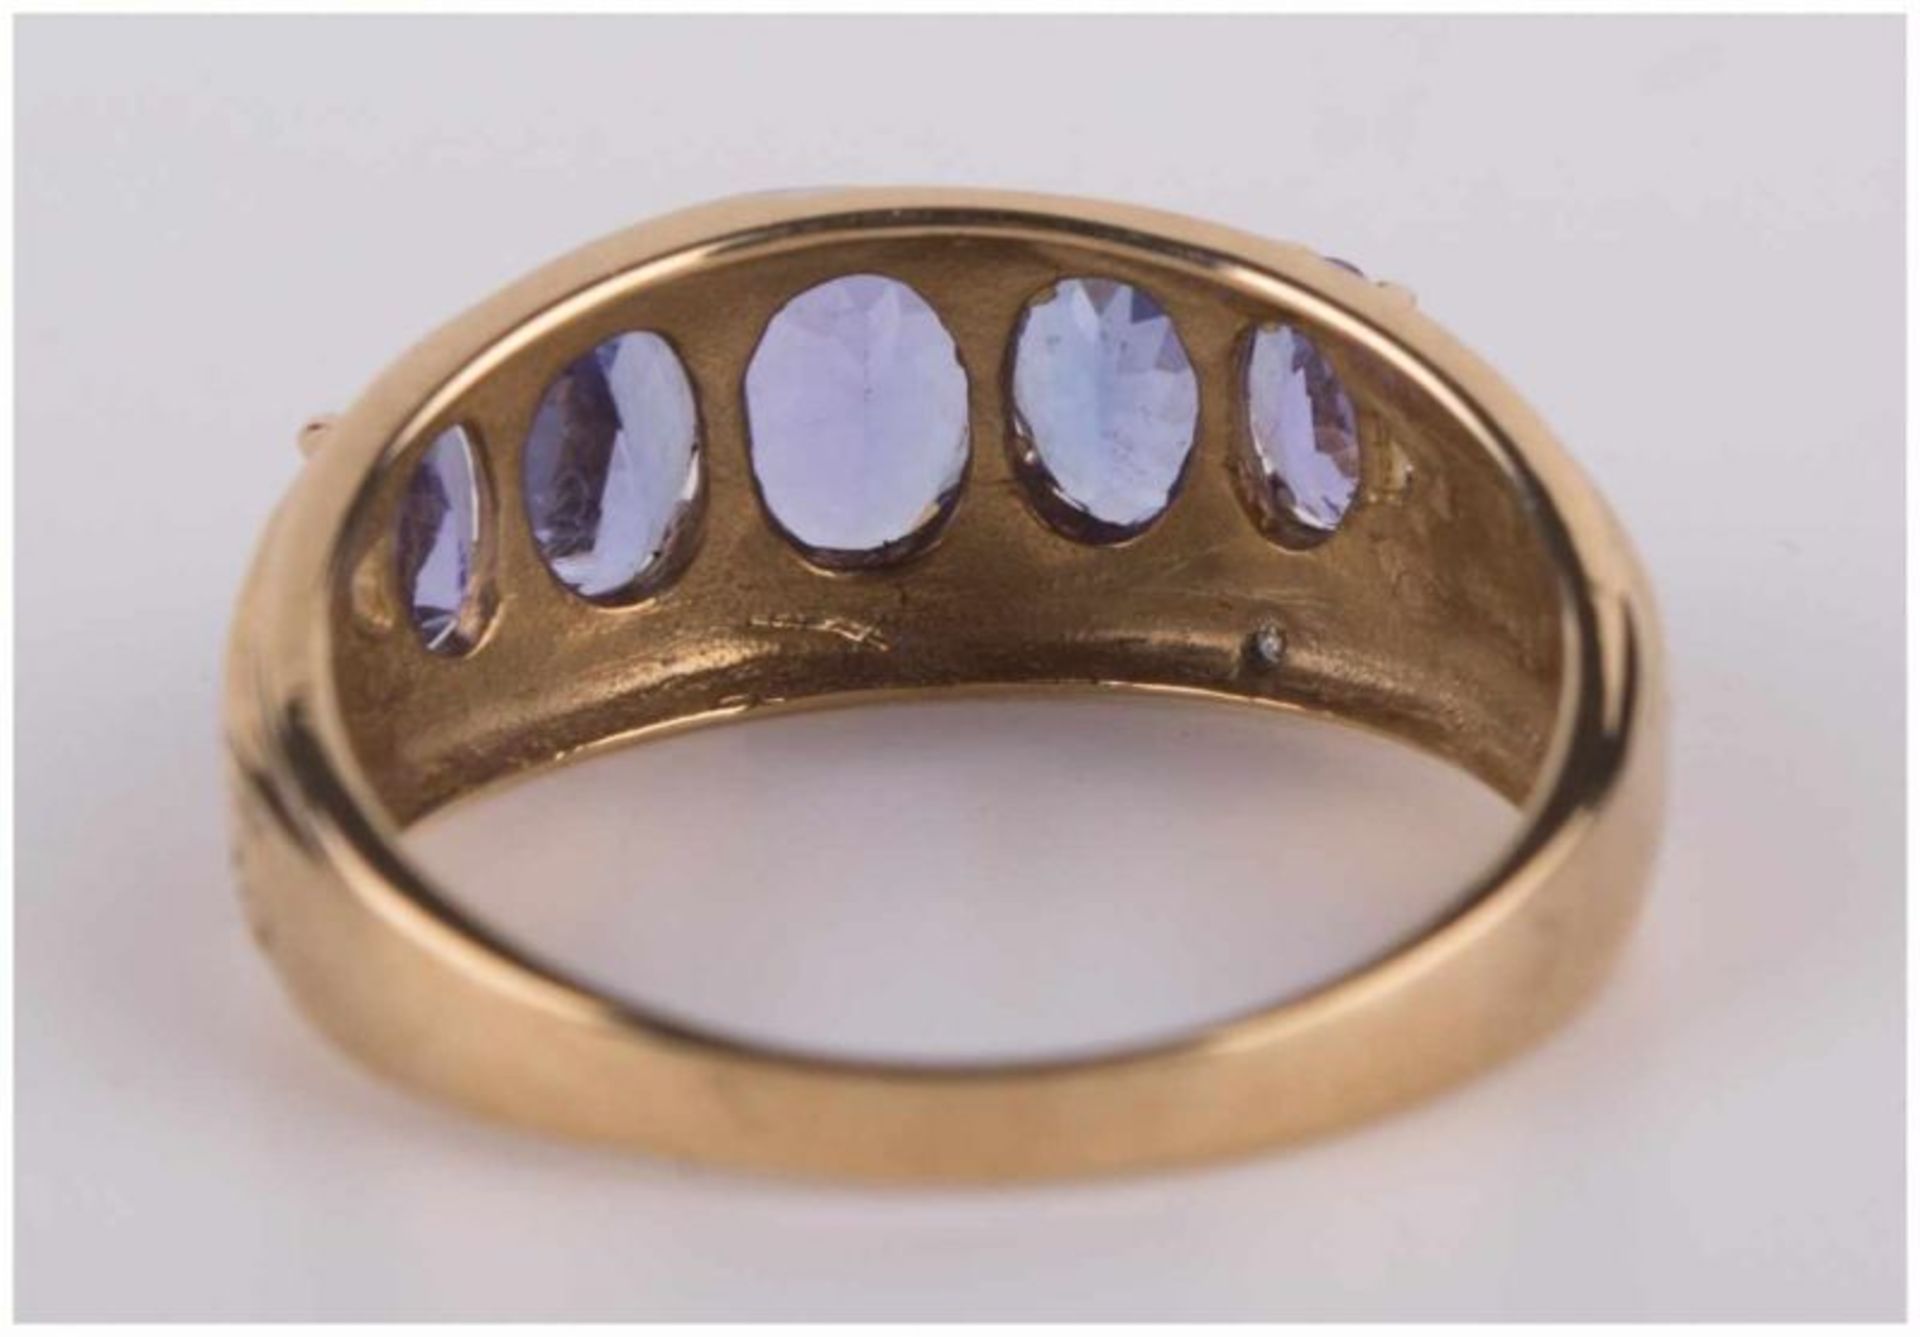 Tansanitring / Tanzanite gold ring - GG 375/000, besetzt mit 5 Steinen zusammen [...] - Bild 4 aus 8